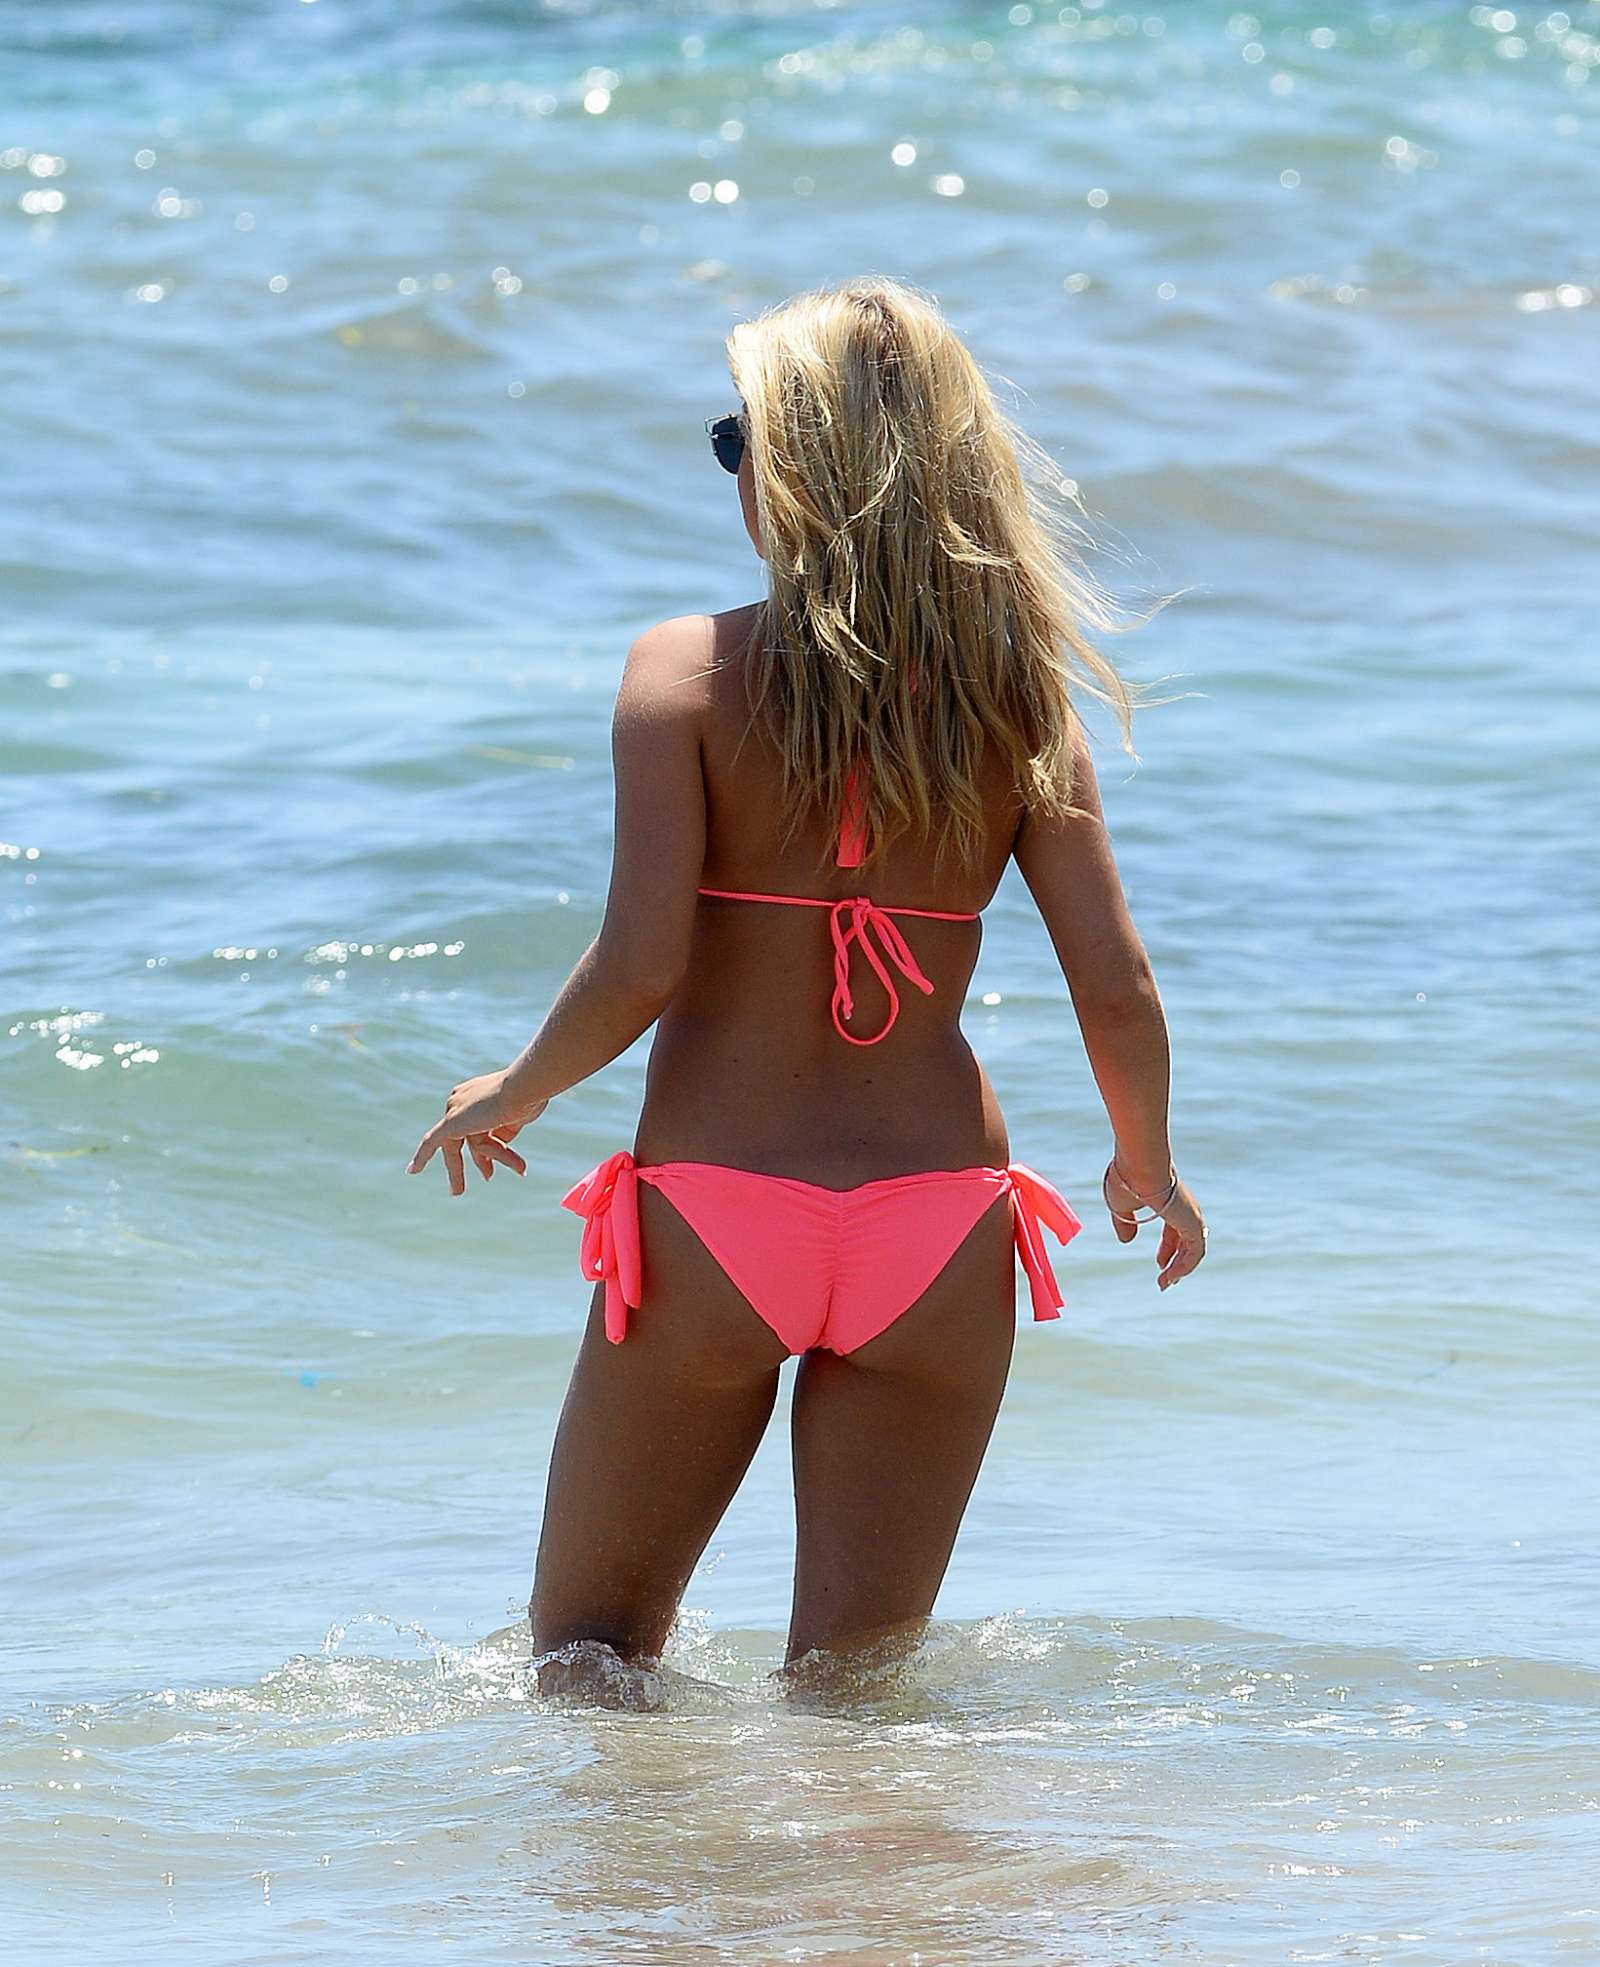 Zara Holland in Pink Bikini on the beach in Ibiza